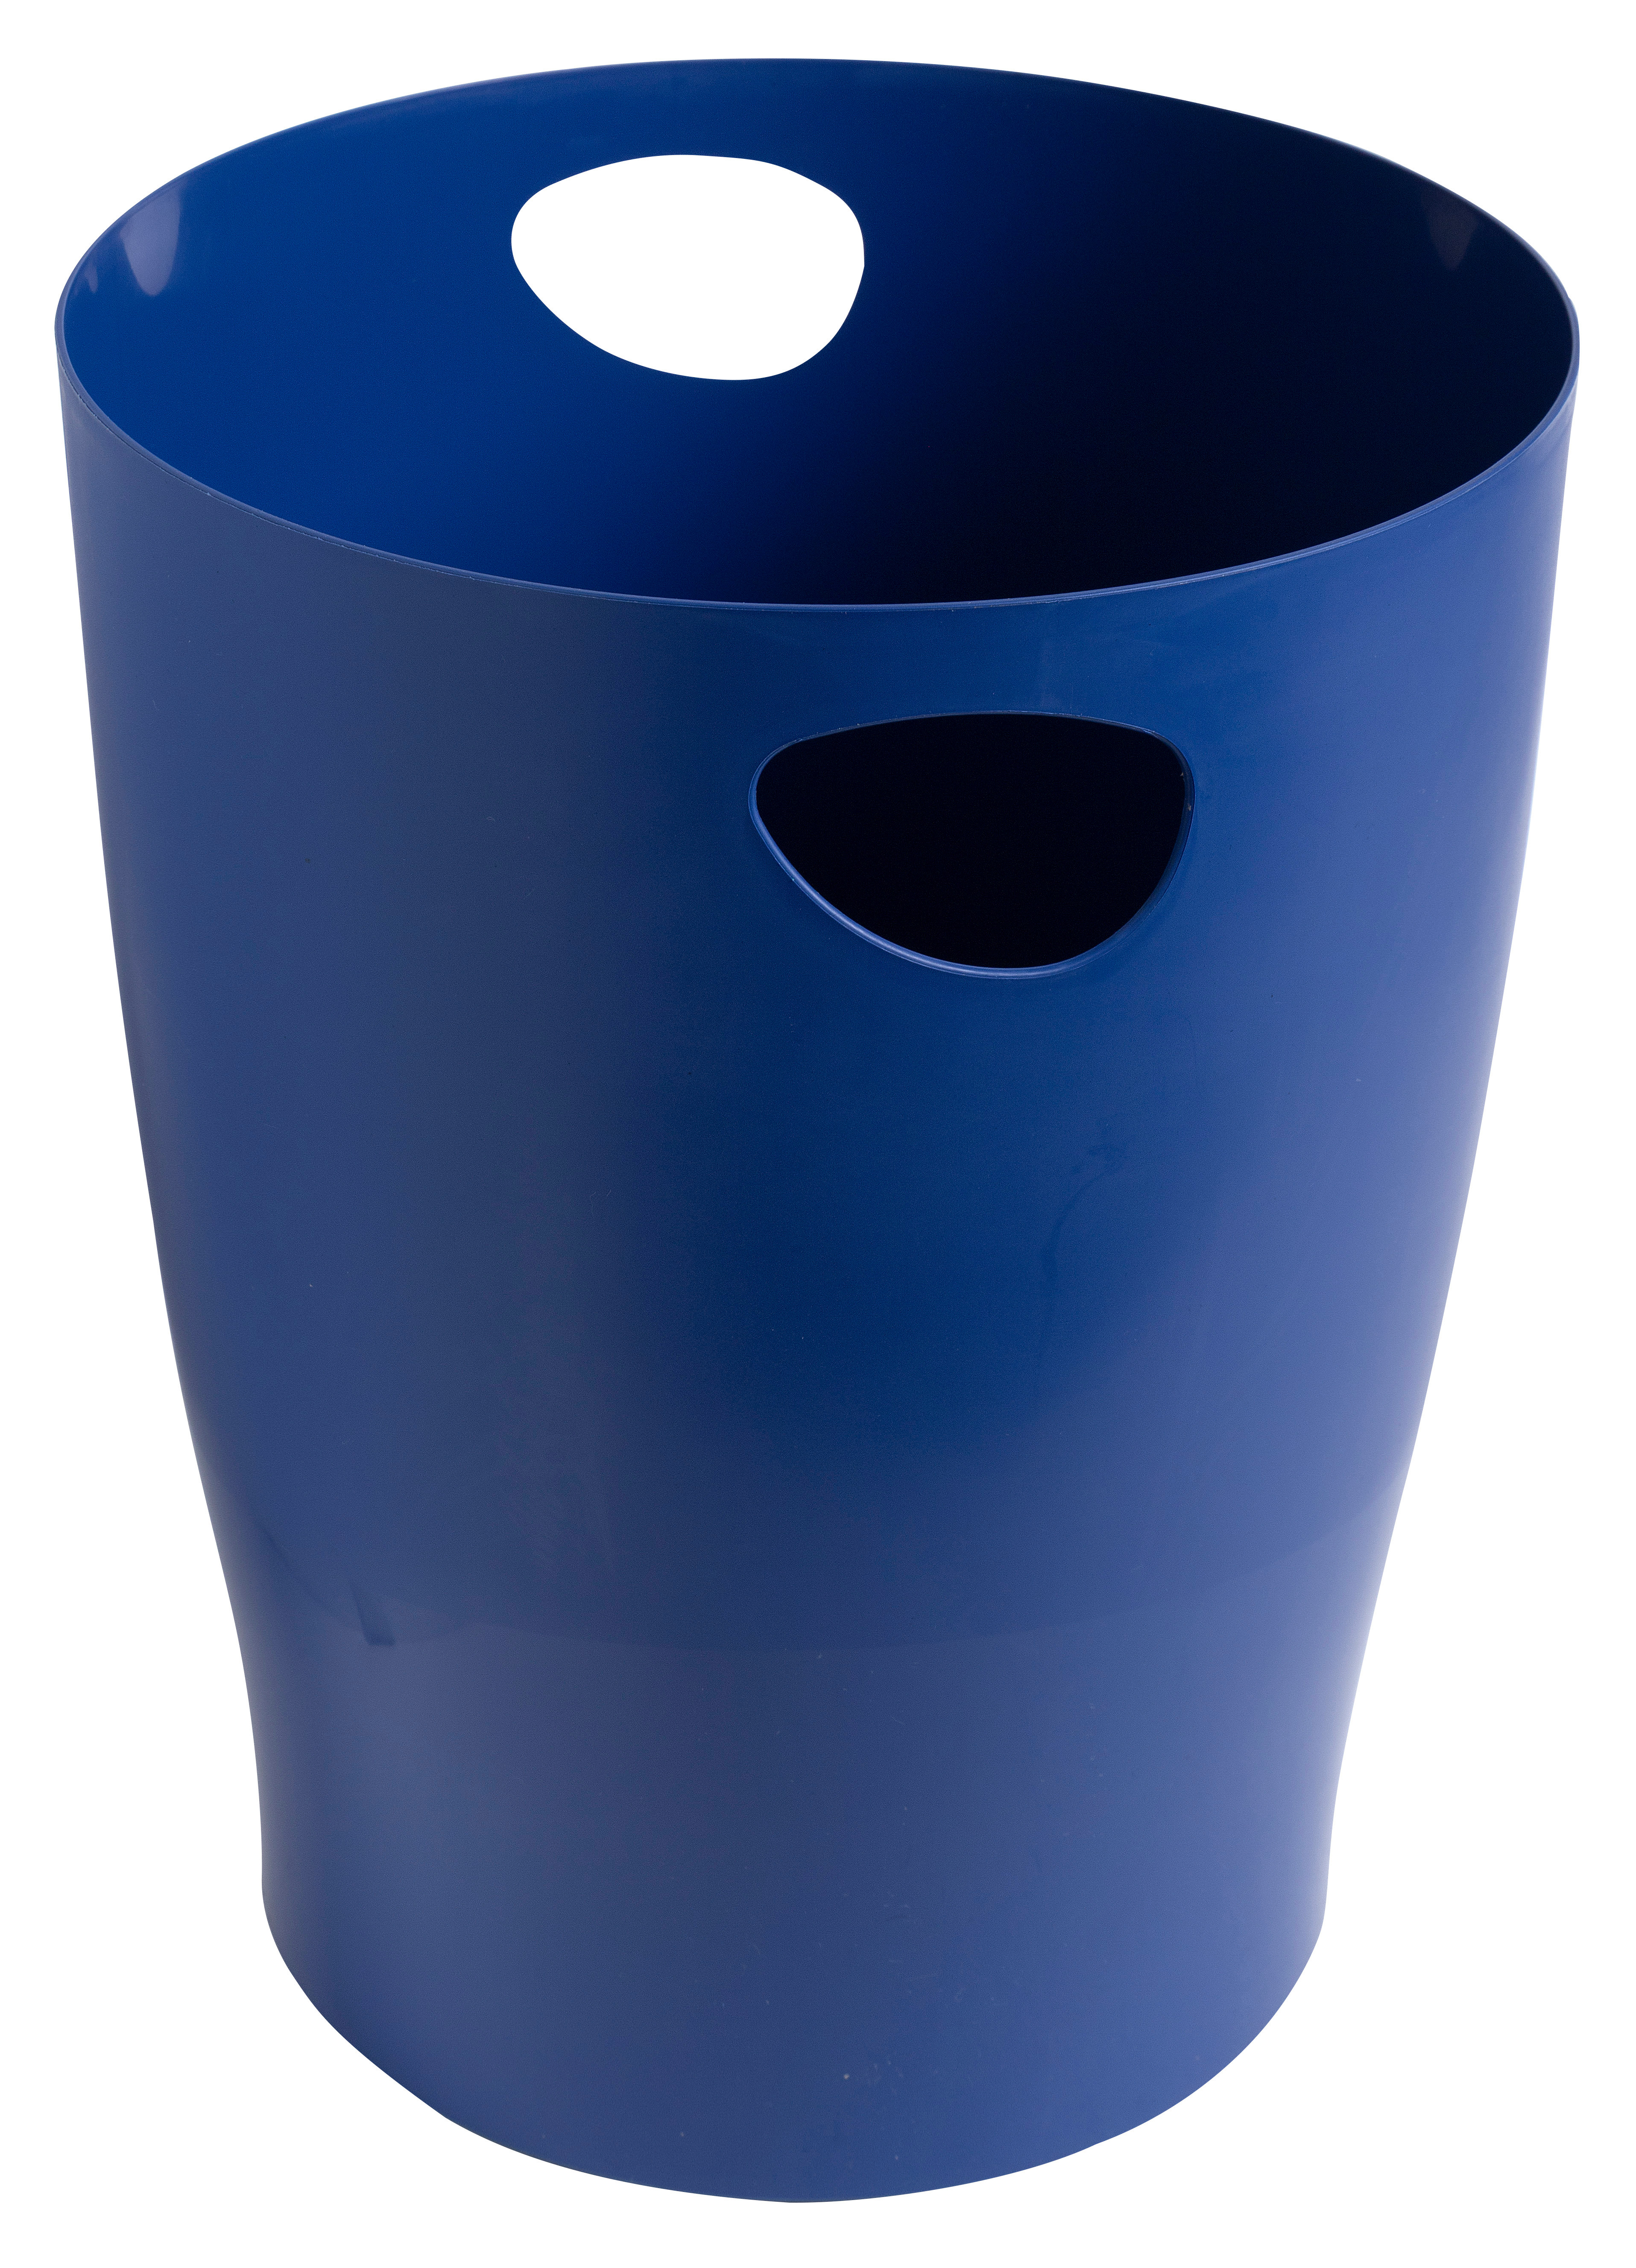 EXACOMPTA Papierkorb Ecobin BeeBlue 15 l 45303D marineblau